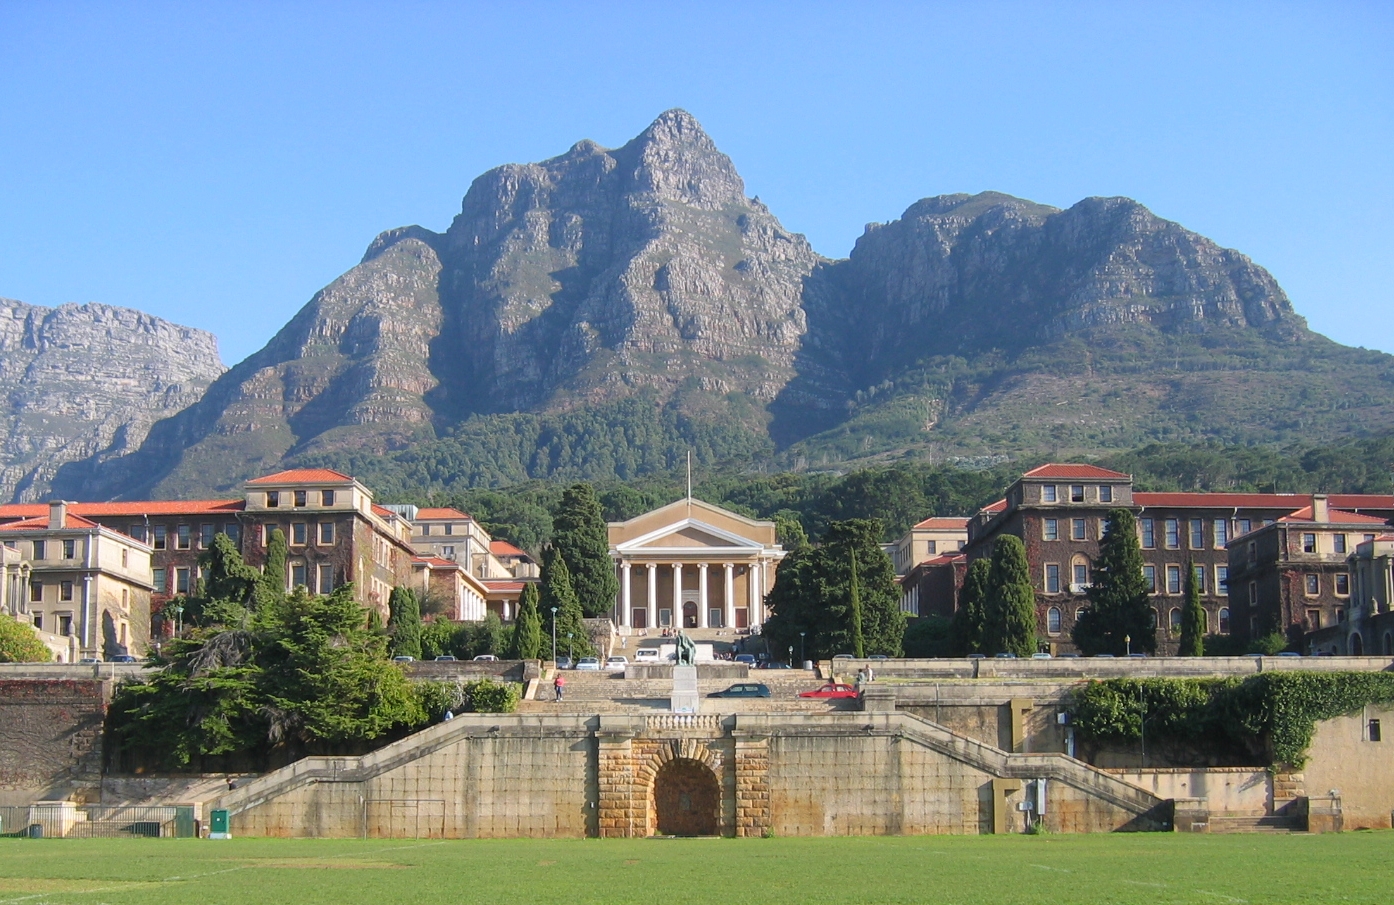 Universiteit van Kaapstad